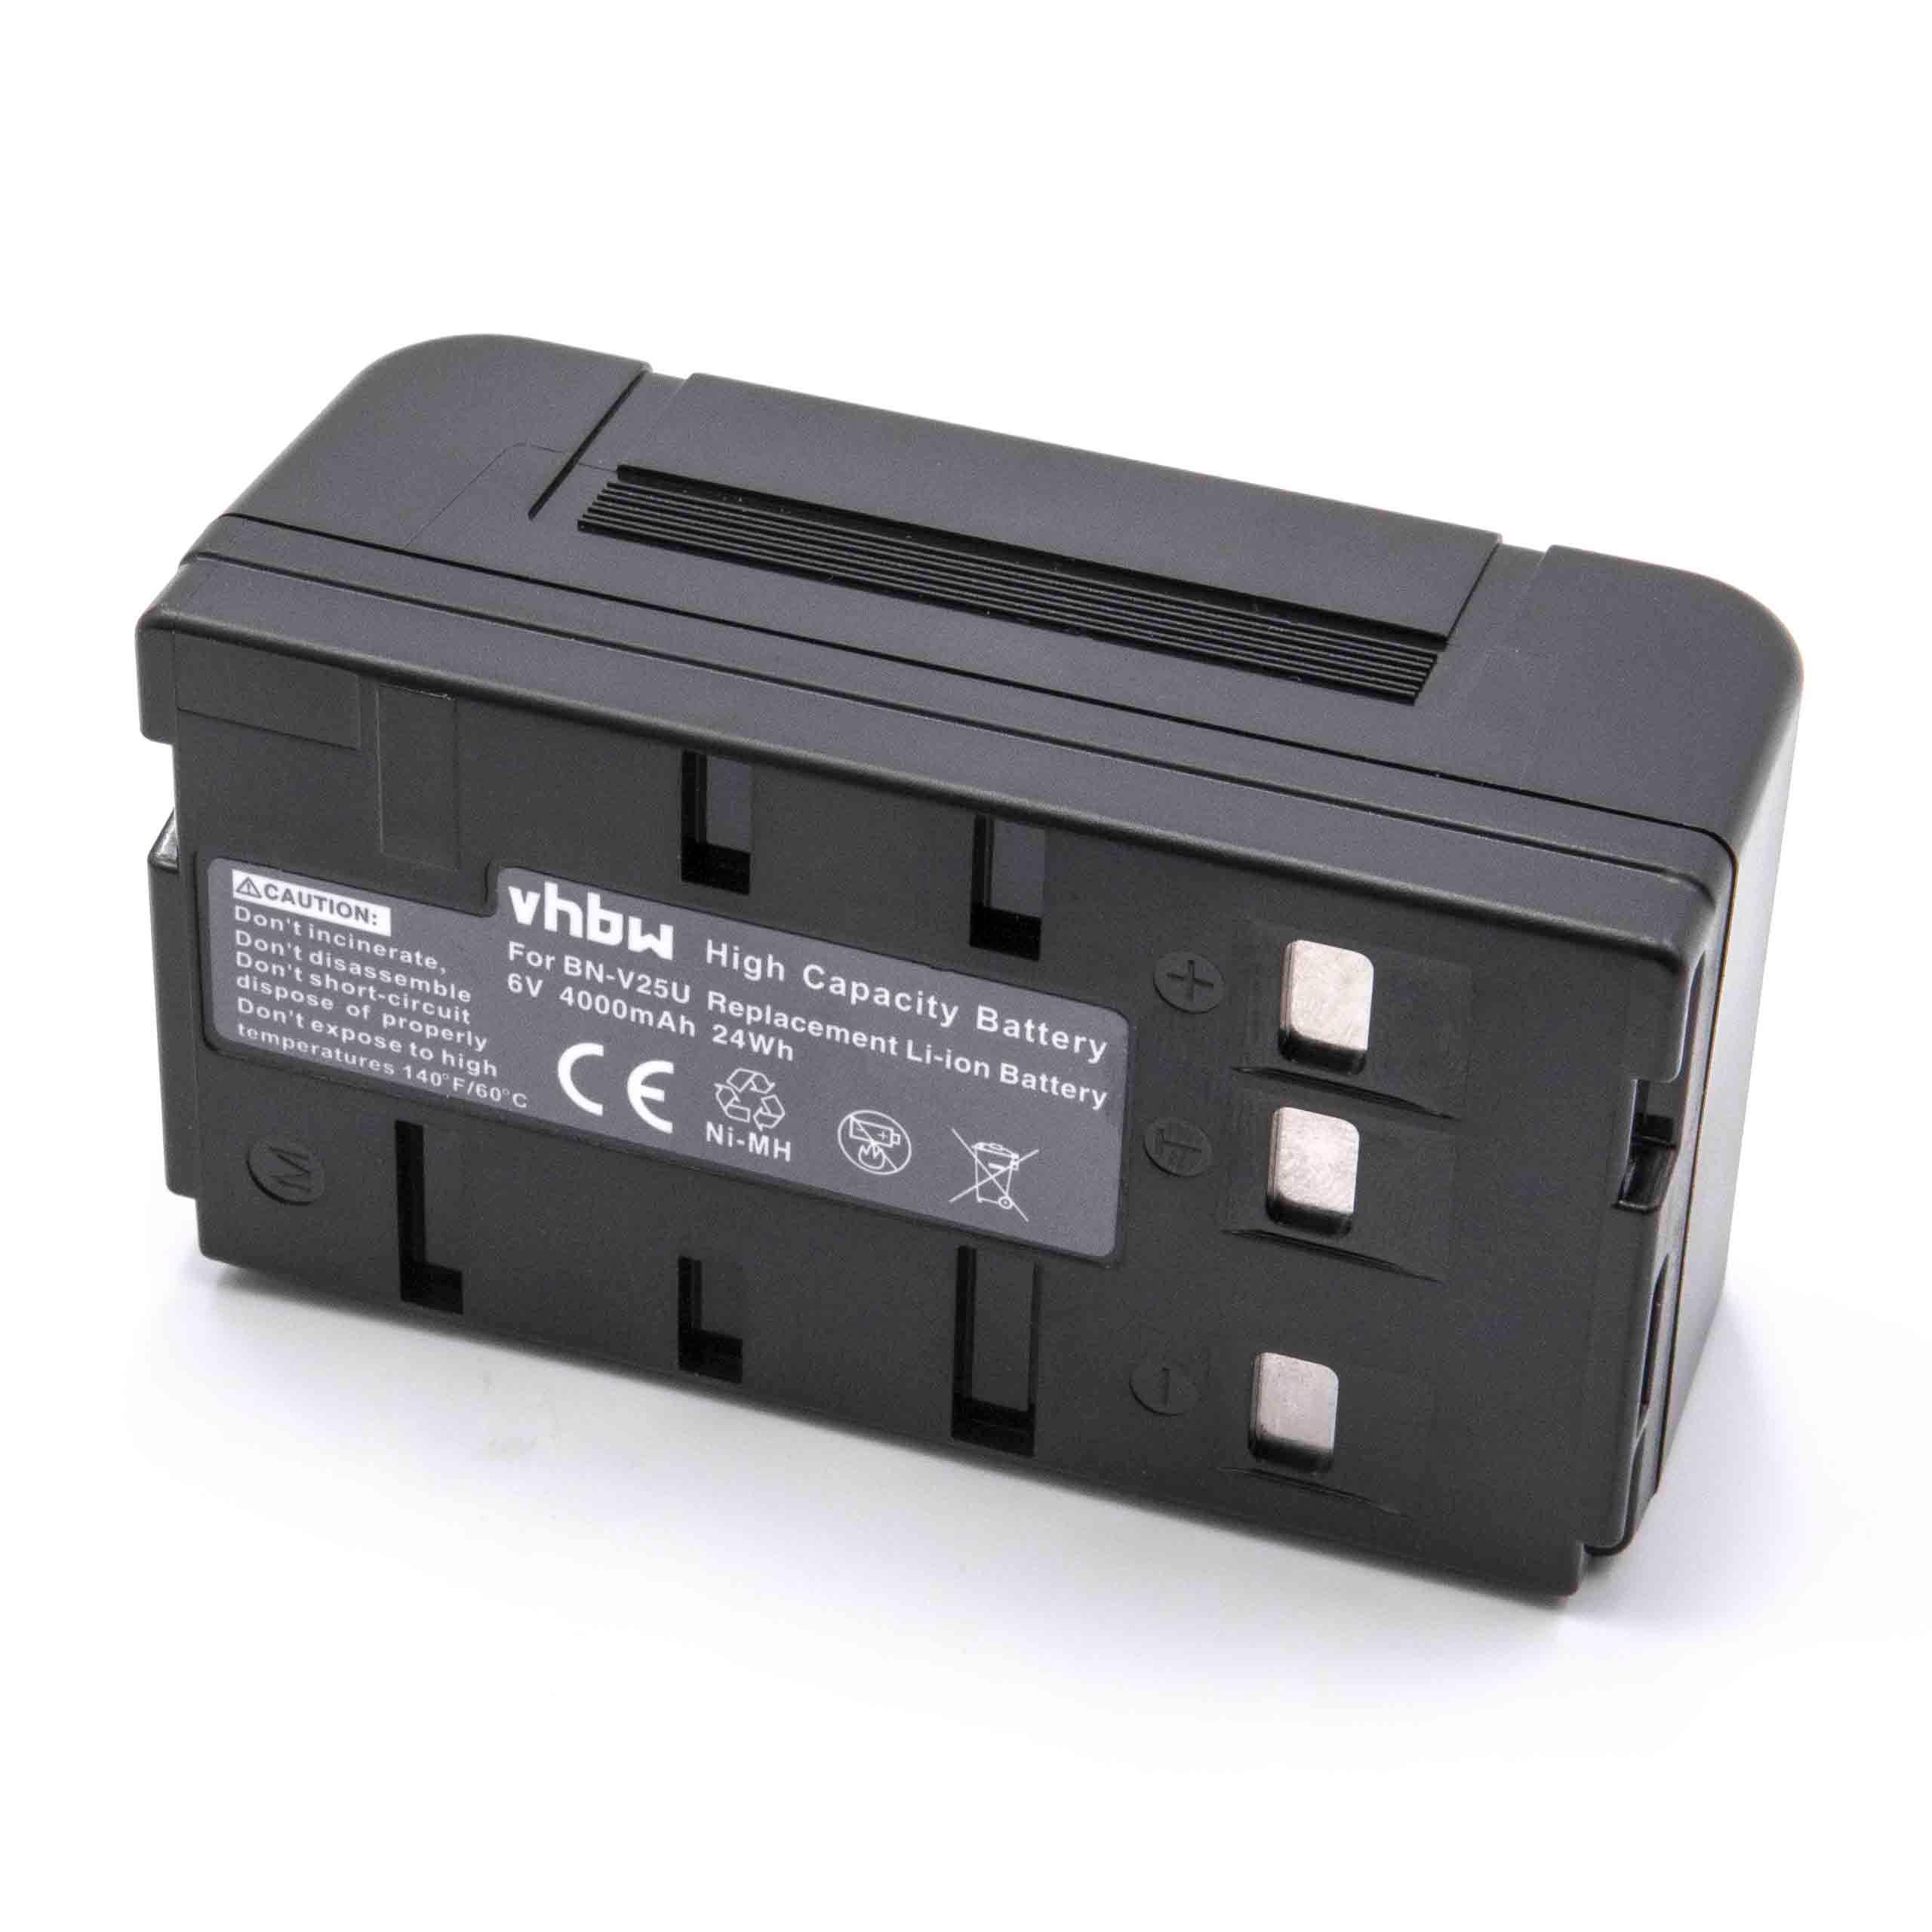 Akumulator do aparatu cyfrowego zamiennik JVC BN-V22U, BN-V20, BN-V22, BN-V20US, BN-V20U - 4000 mAh 6 V NiMH